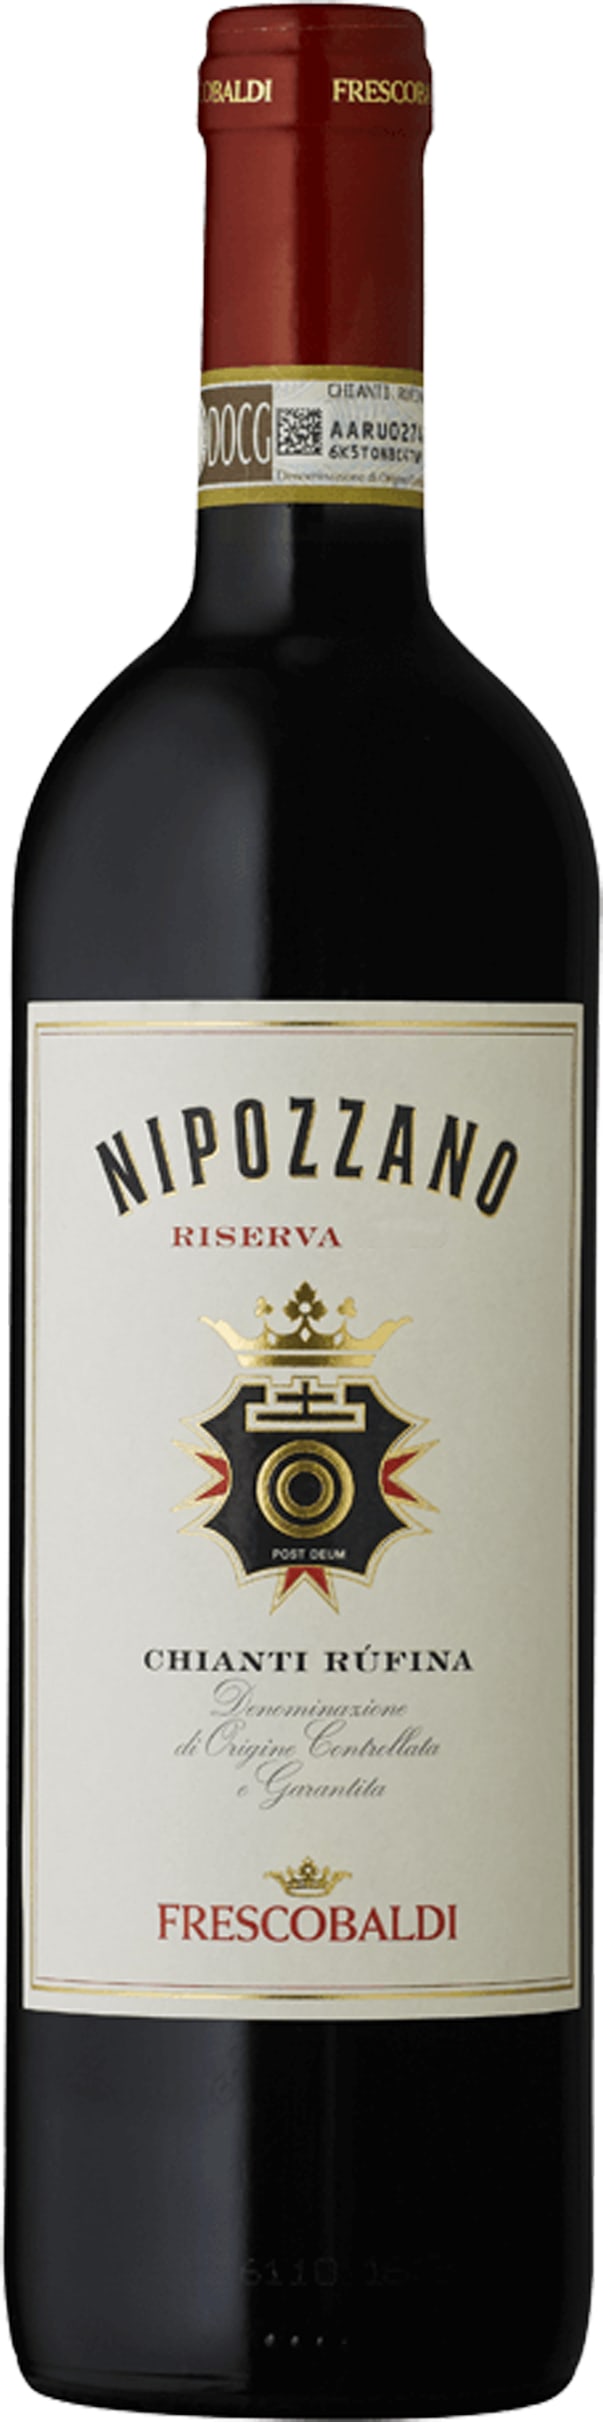 Frescobaldi Nipozzano Chianti Rufina Riserva 2019 75cl - Buy Frescobaldi Wines from GREAT WINES DIRECT wine shop